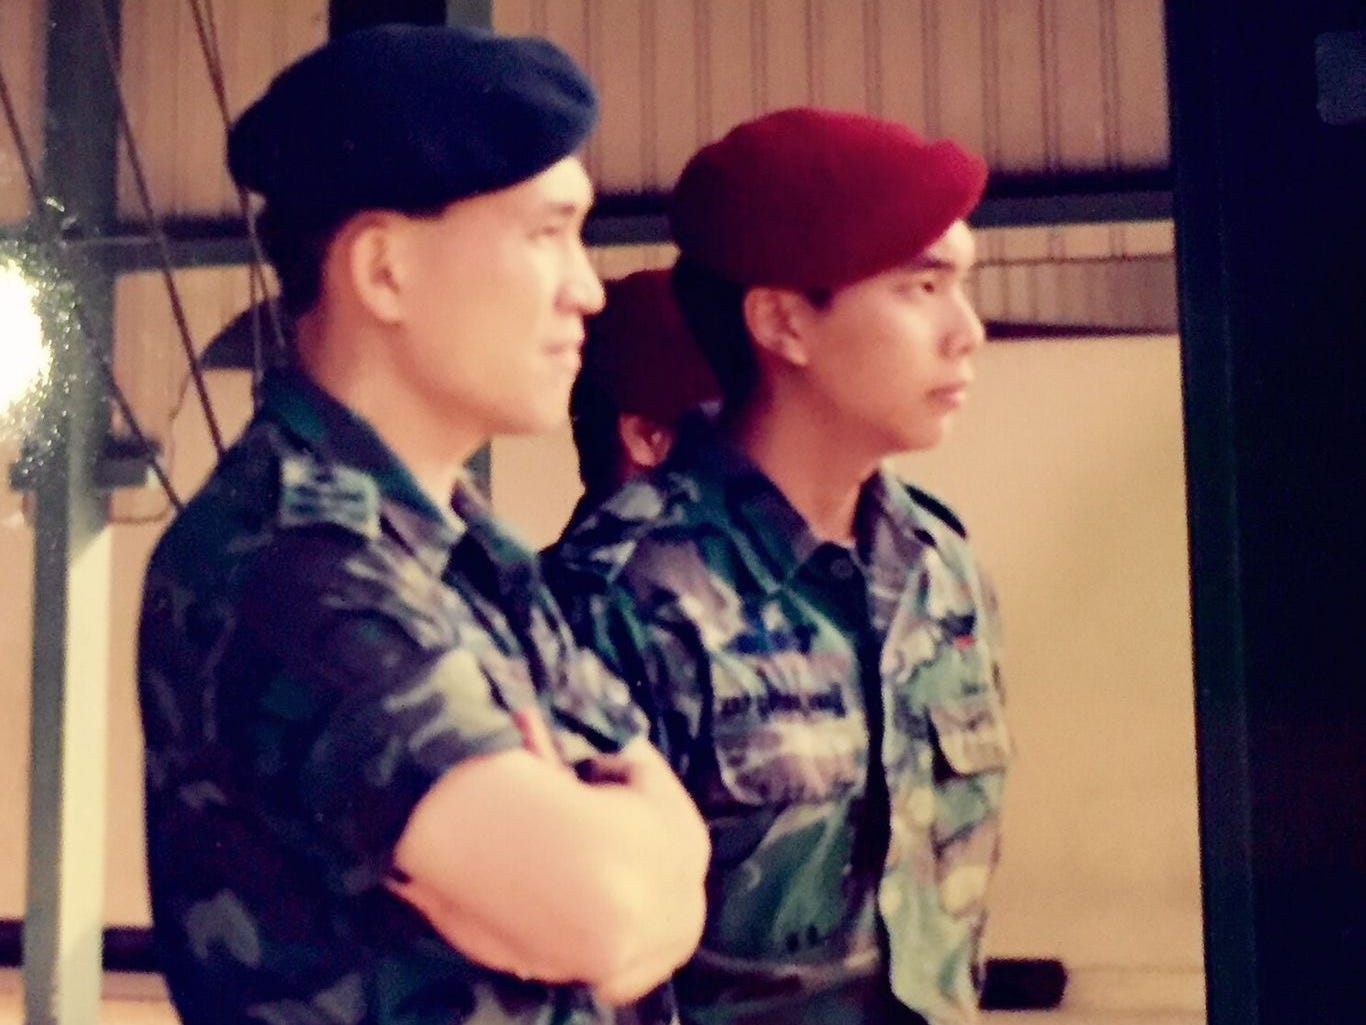 Yap (rechts) mit dem damaligen Chef der Verteidigungsstreitkräfte Singapurs, Lim Chuan Poh (links).